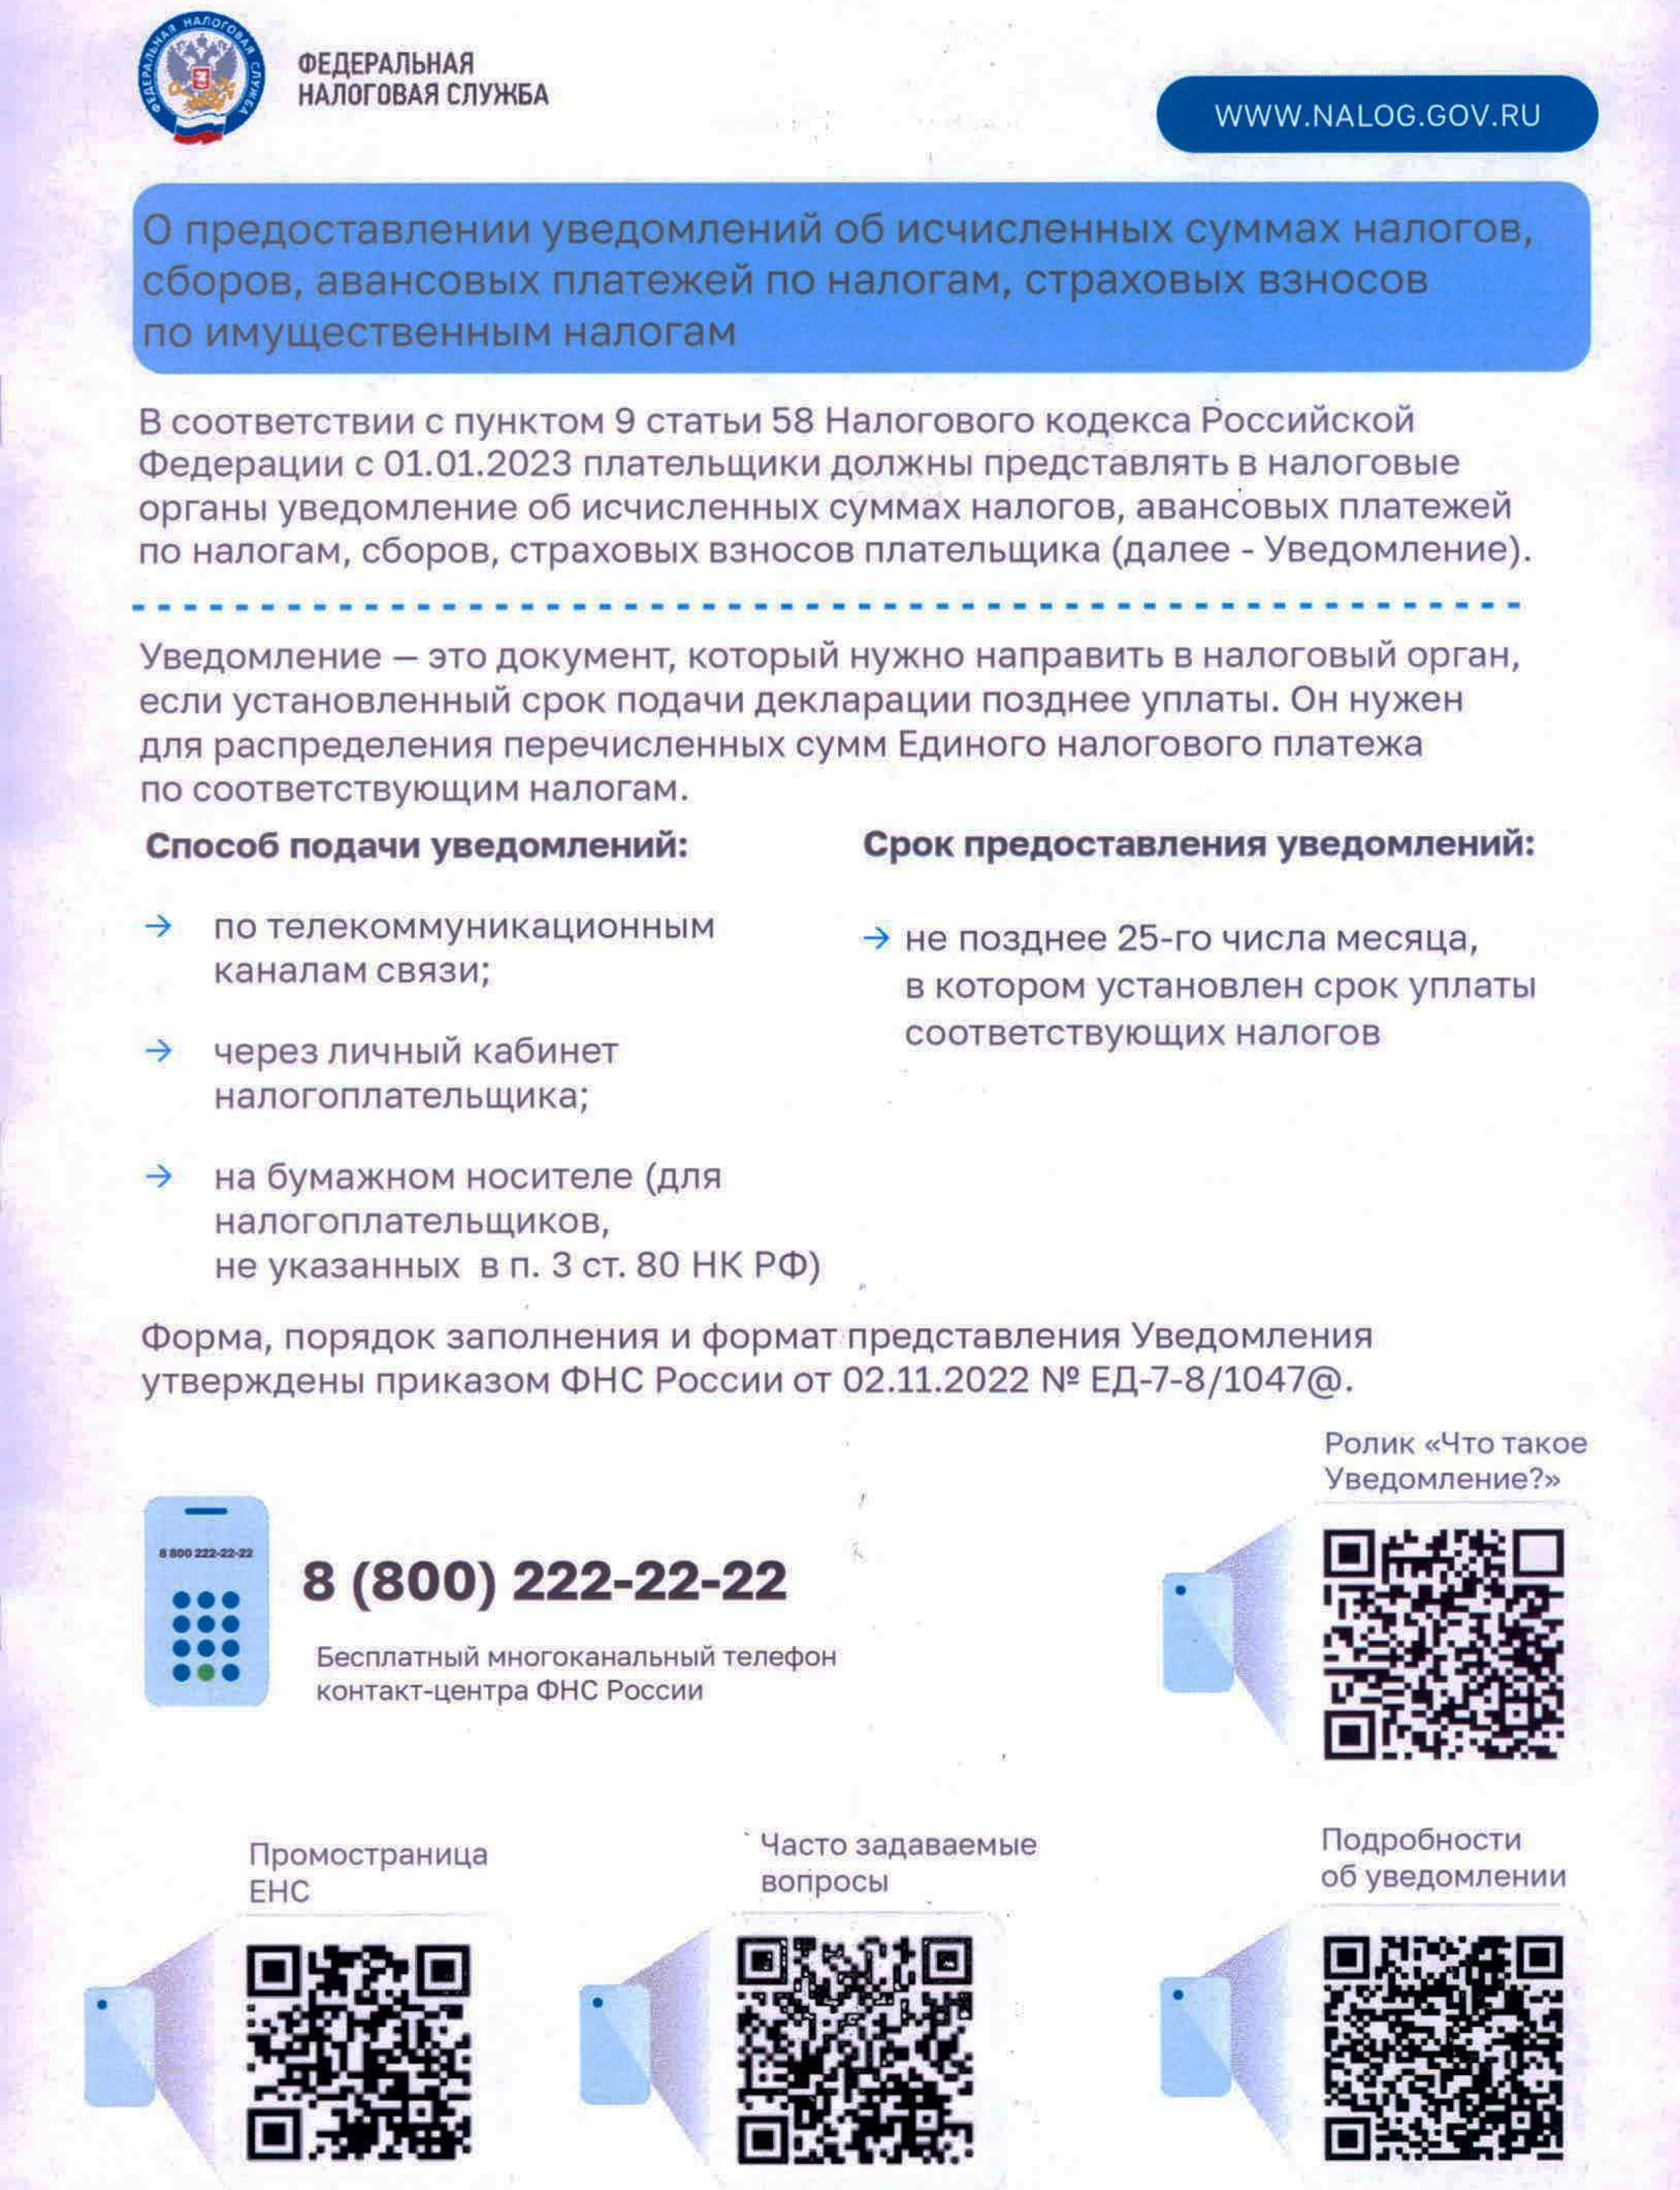 Управление Федеральной налоговой службы по городу Москве информирует